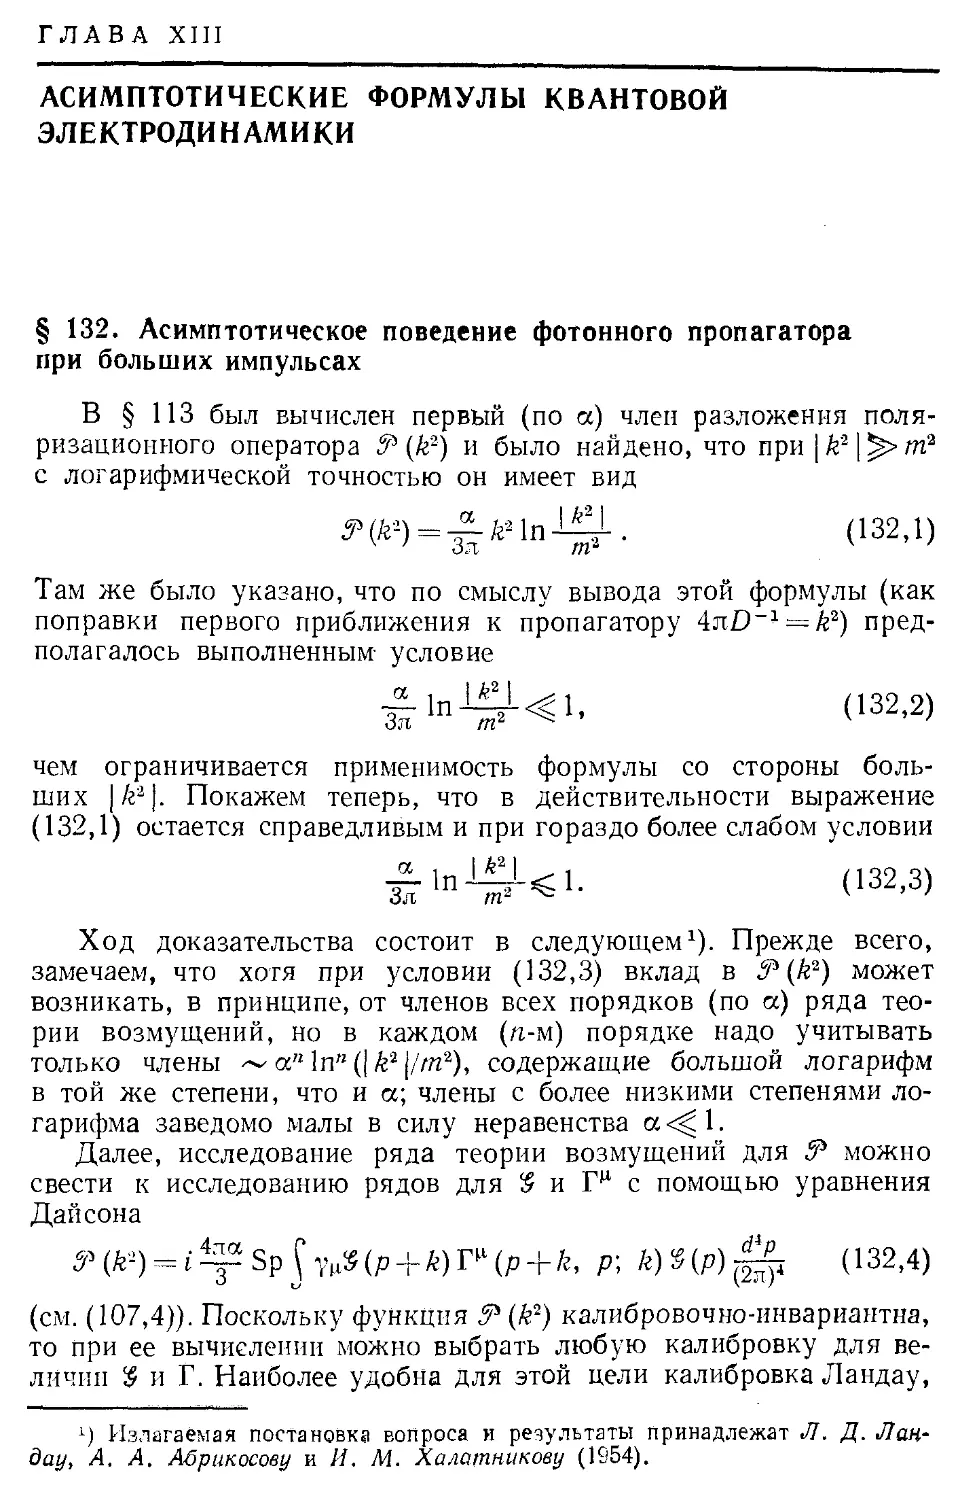 Глава XIII. Асимптотические формулы квантовой электродинамики
§ 132. Асимптотическое поведение фотонного пропагатора при больших импульсах